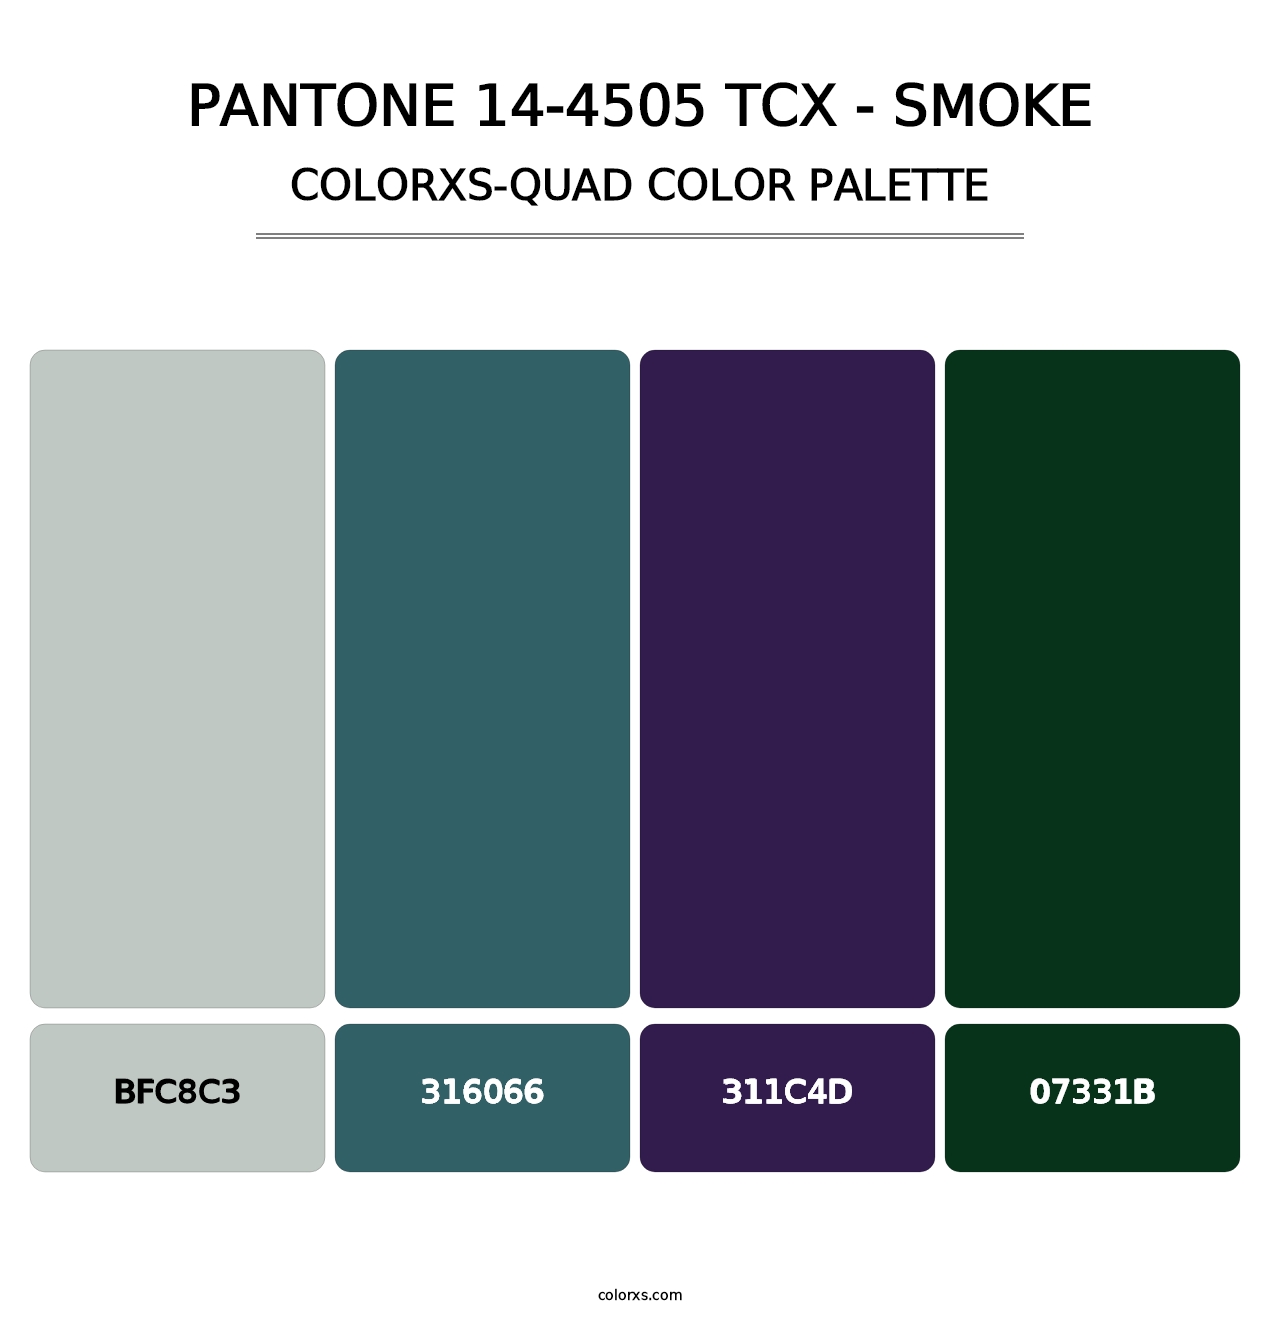 PANTONE 14-4505 TCX - Smoke - Colorxs Quad Palette